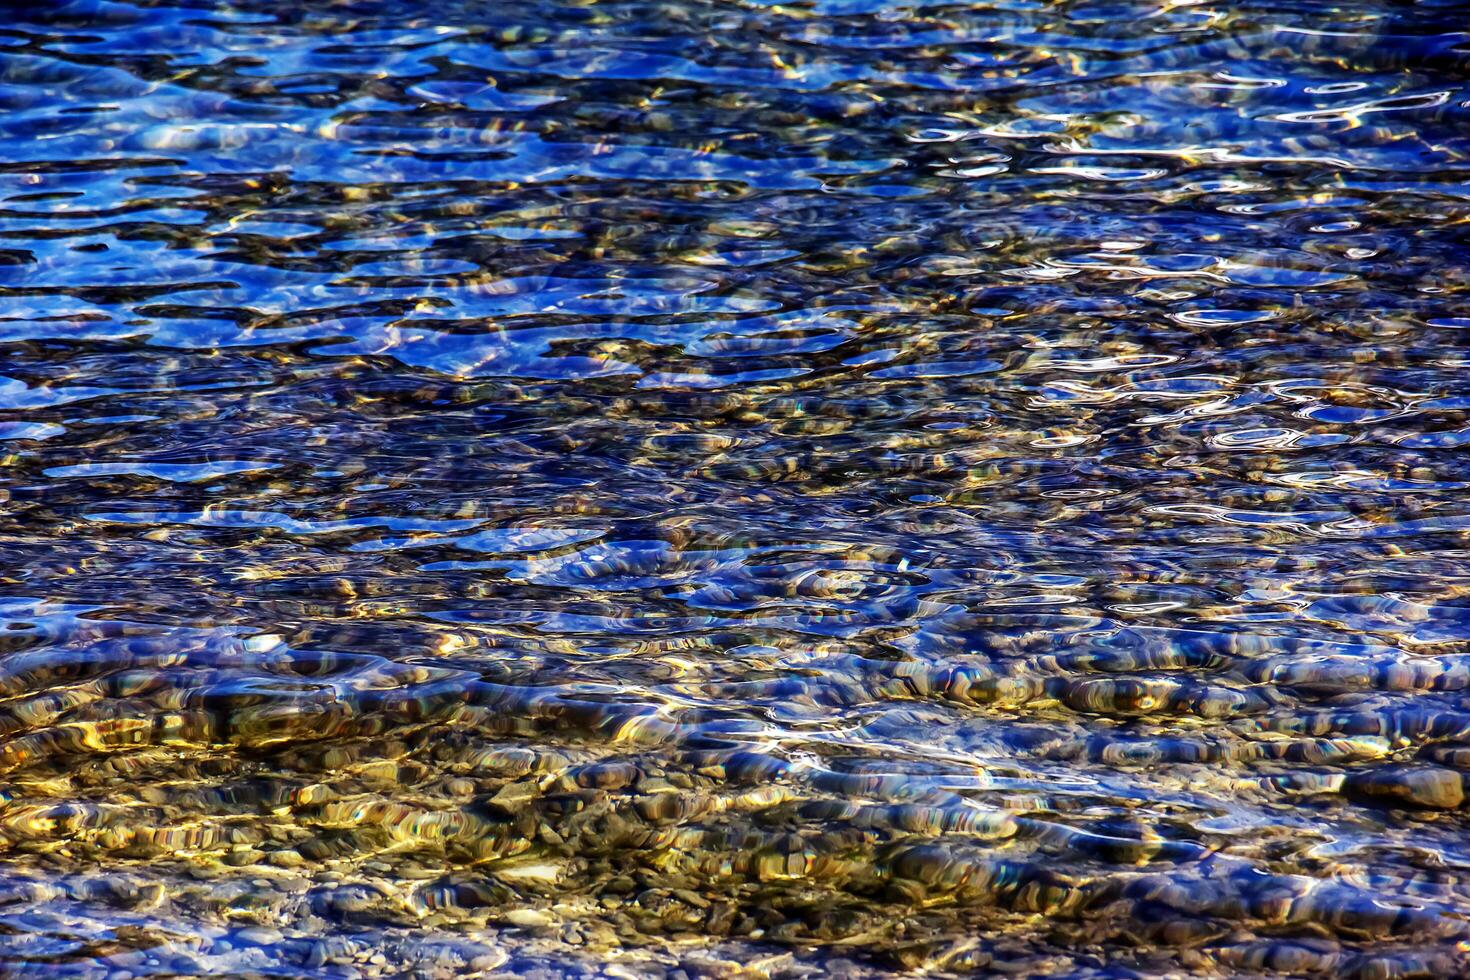 bakgrund av de vatten av sjö Traunsee i de kust område. färgrik textur av stenar under vatten foto